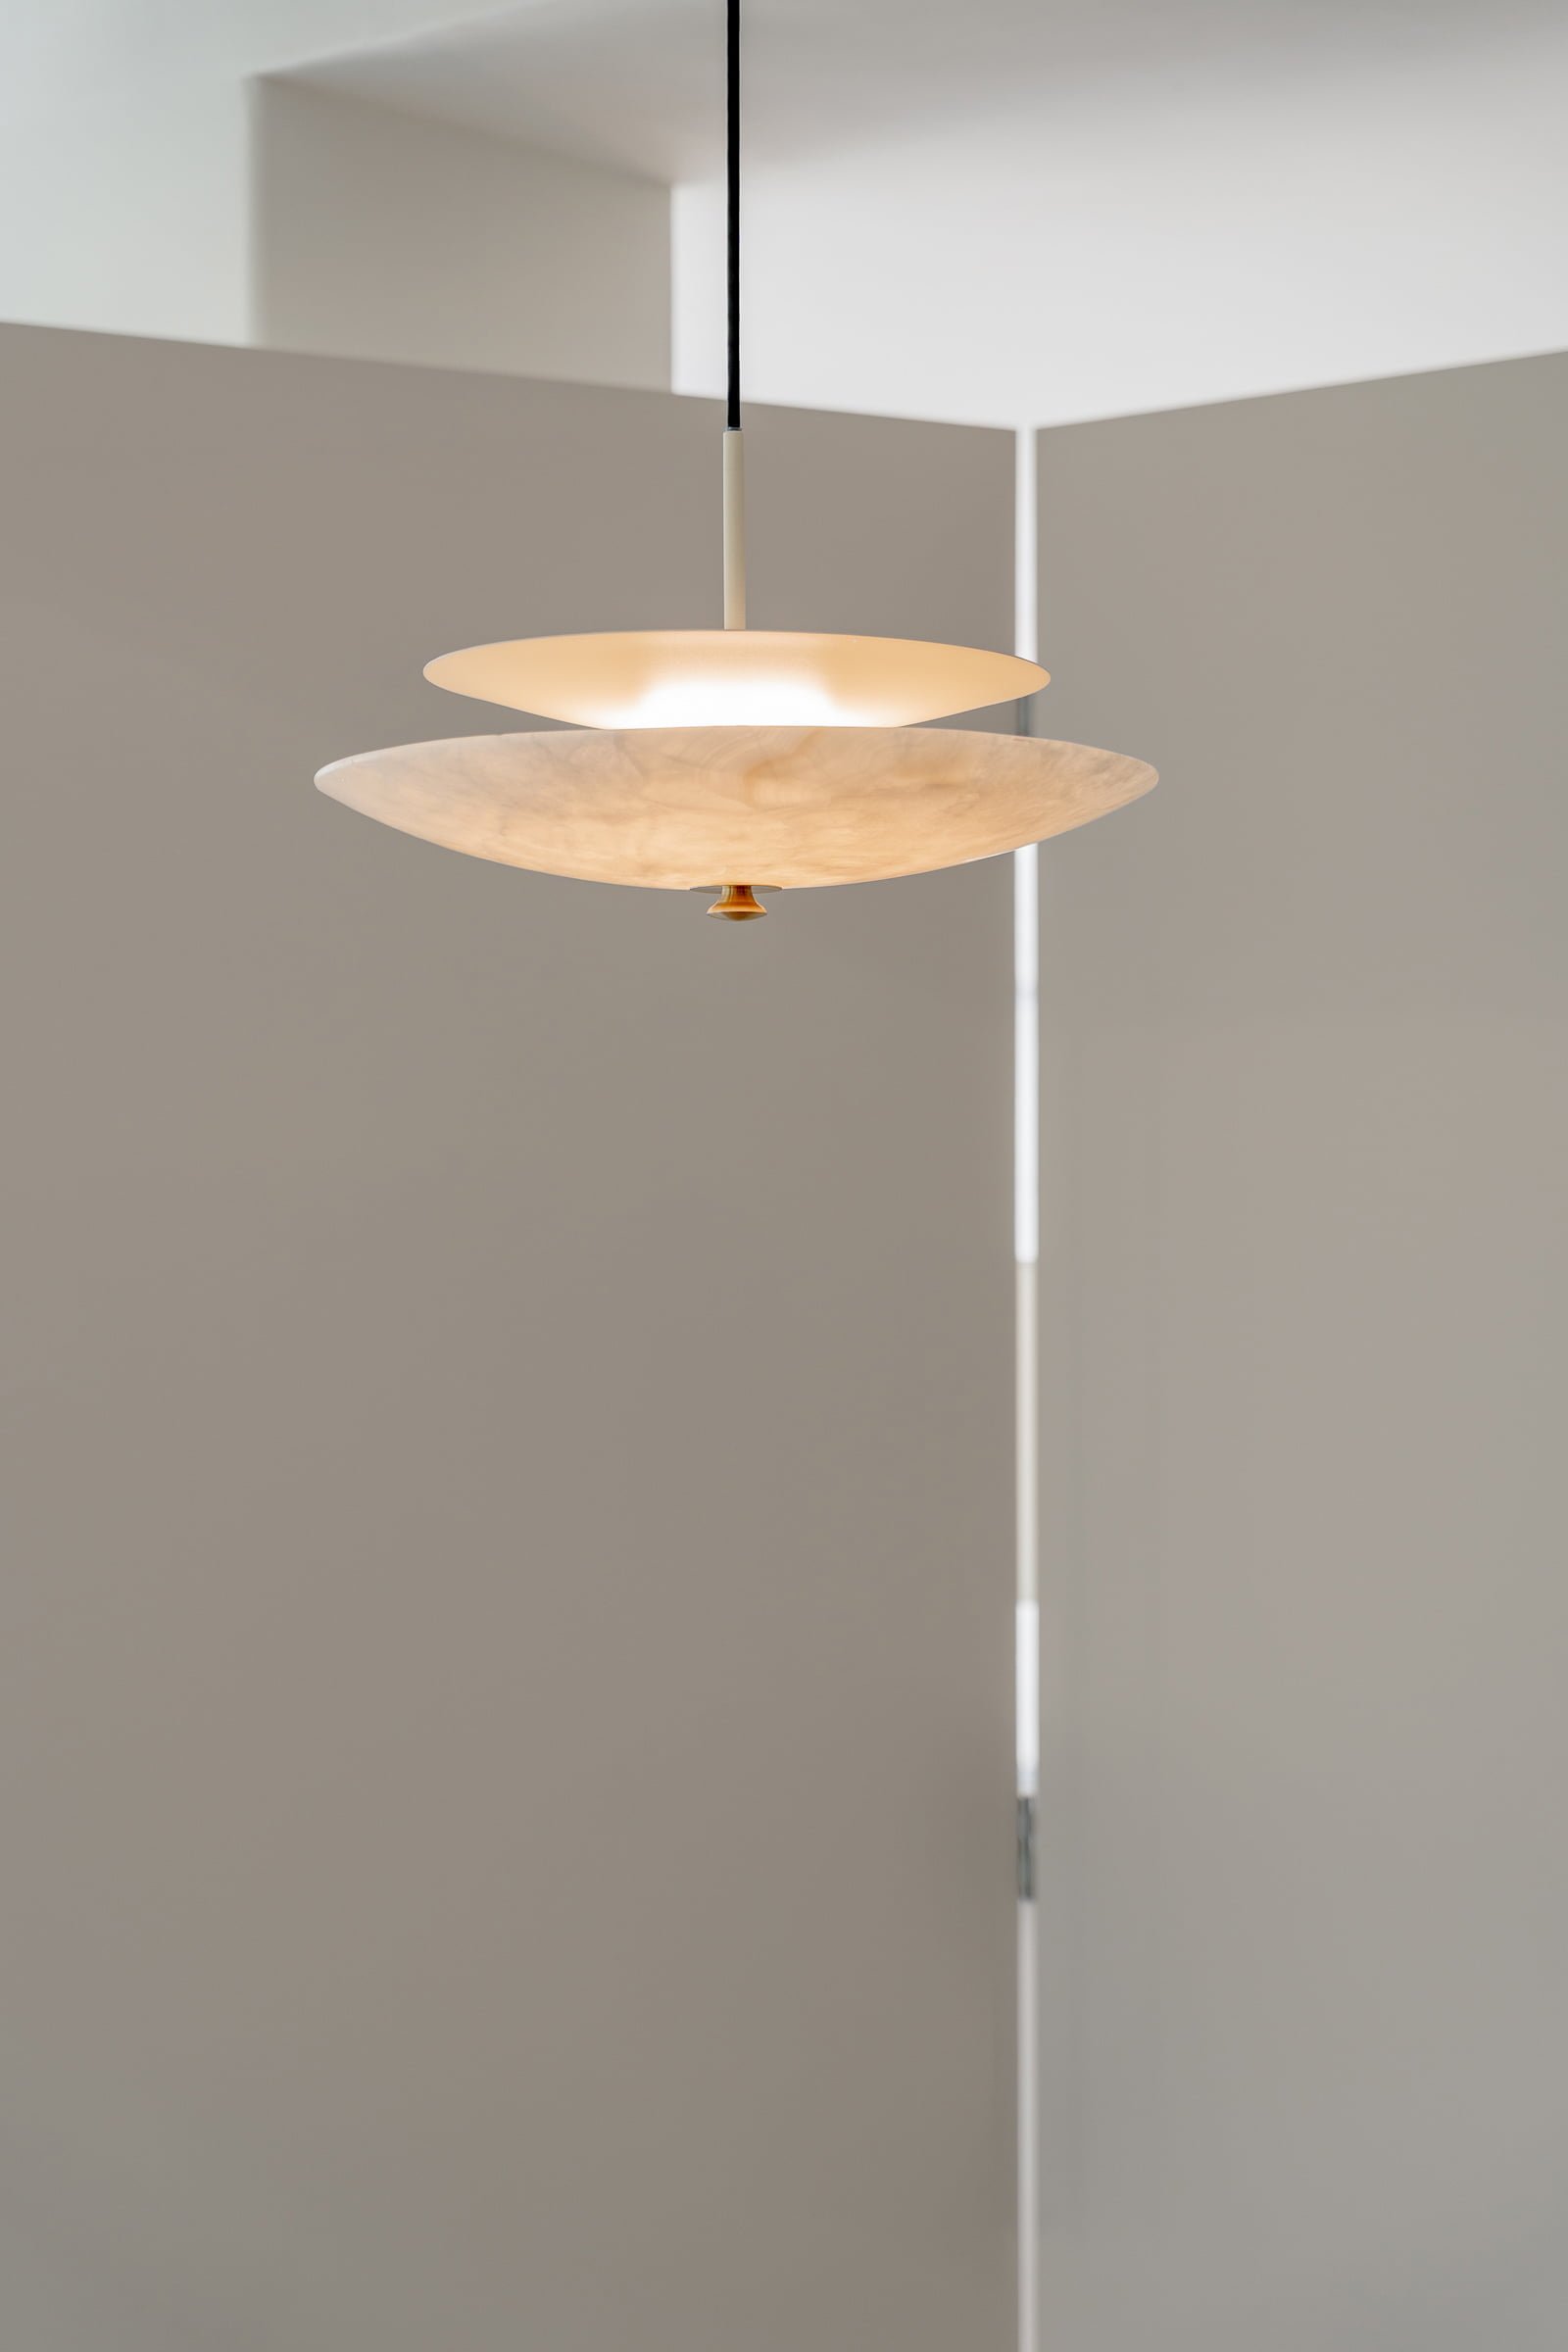 Stone pendant lamp designed by Distrito Bandido